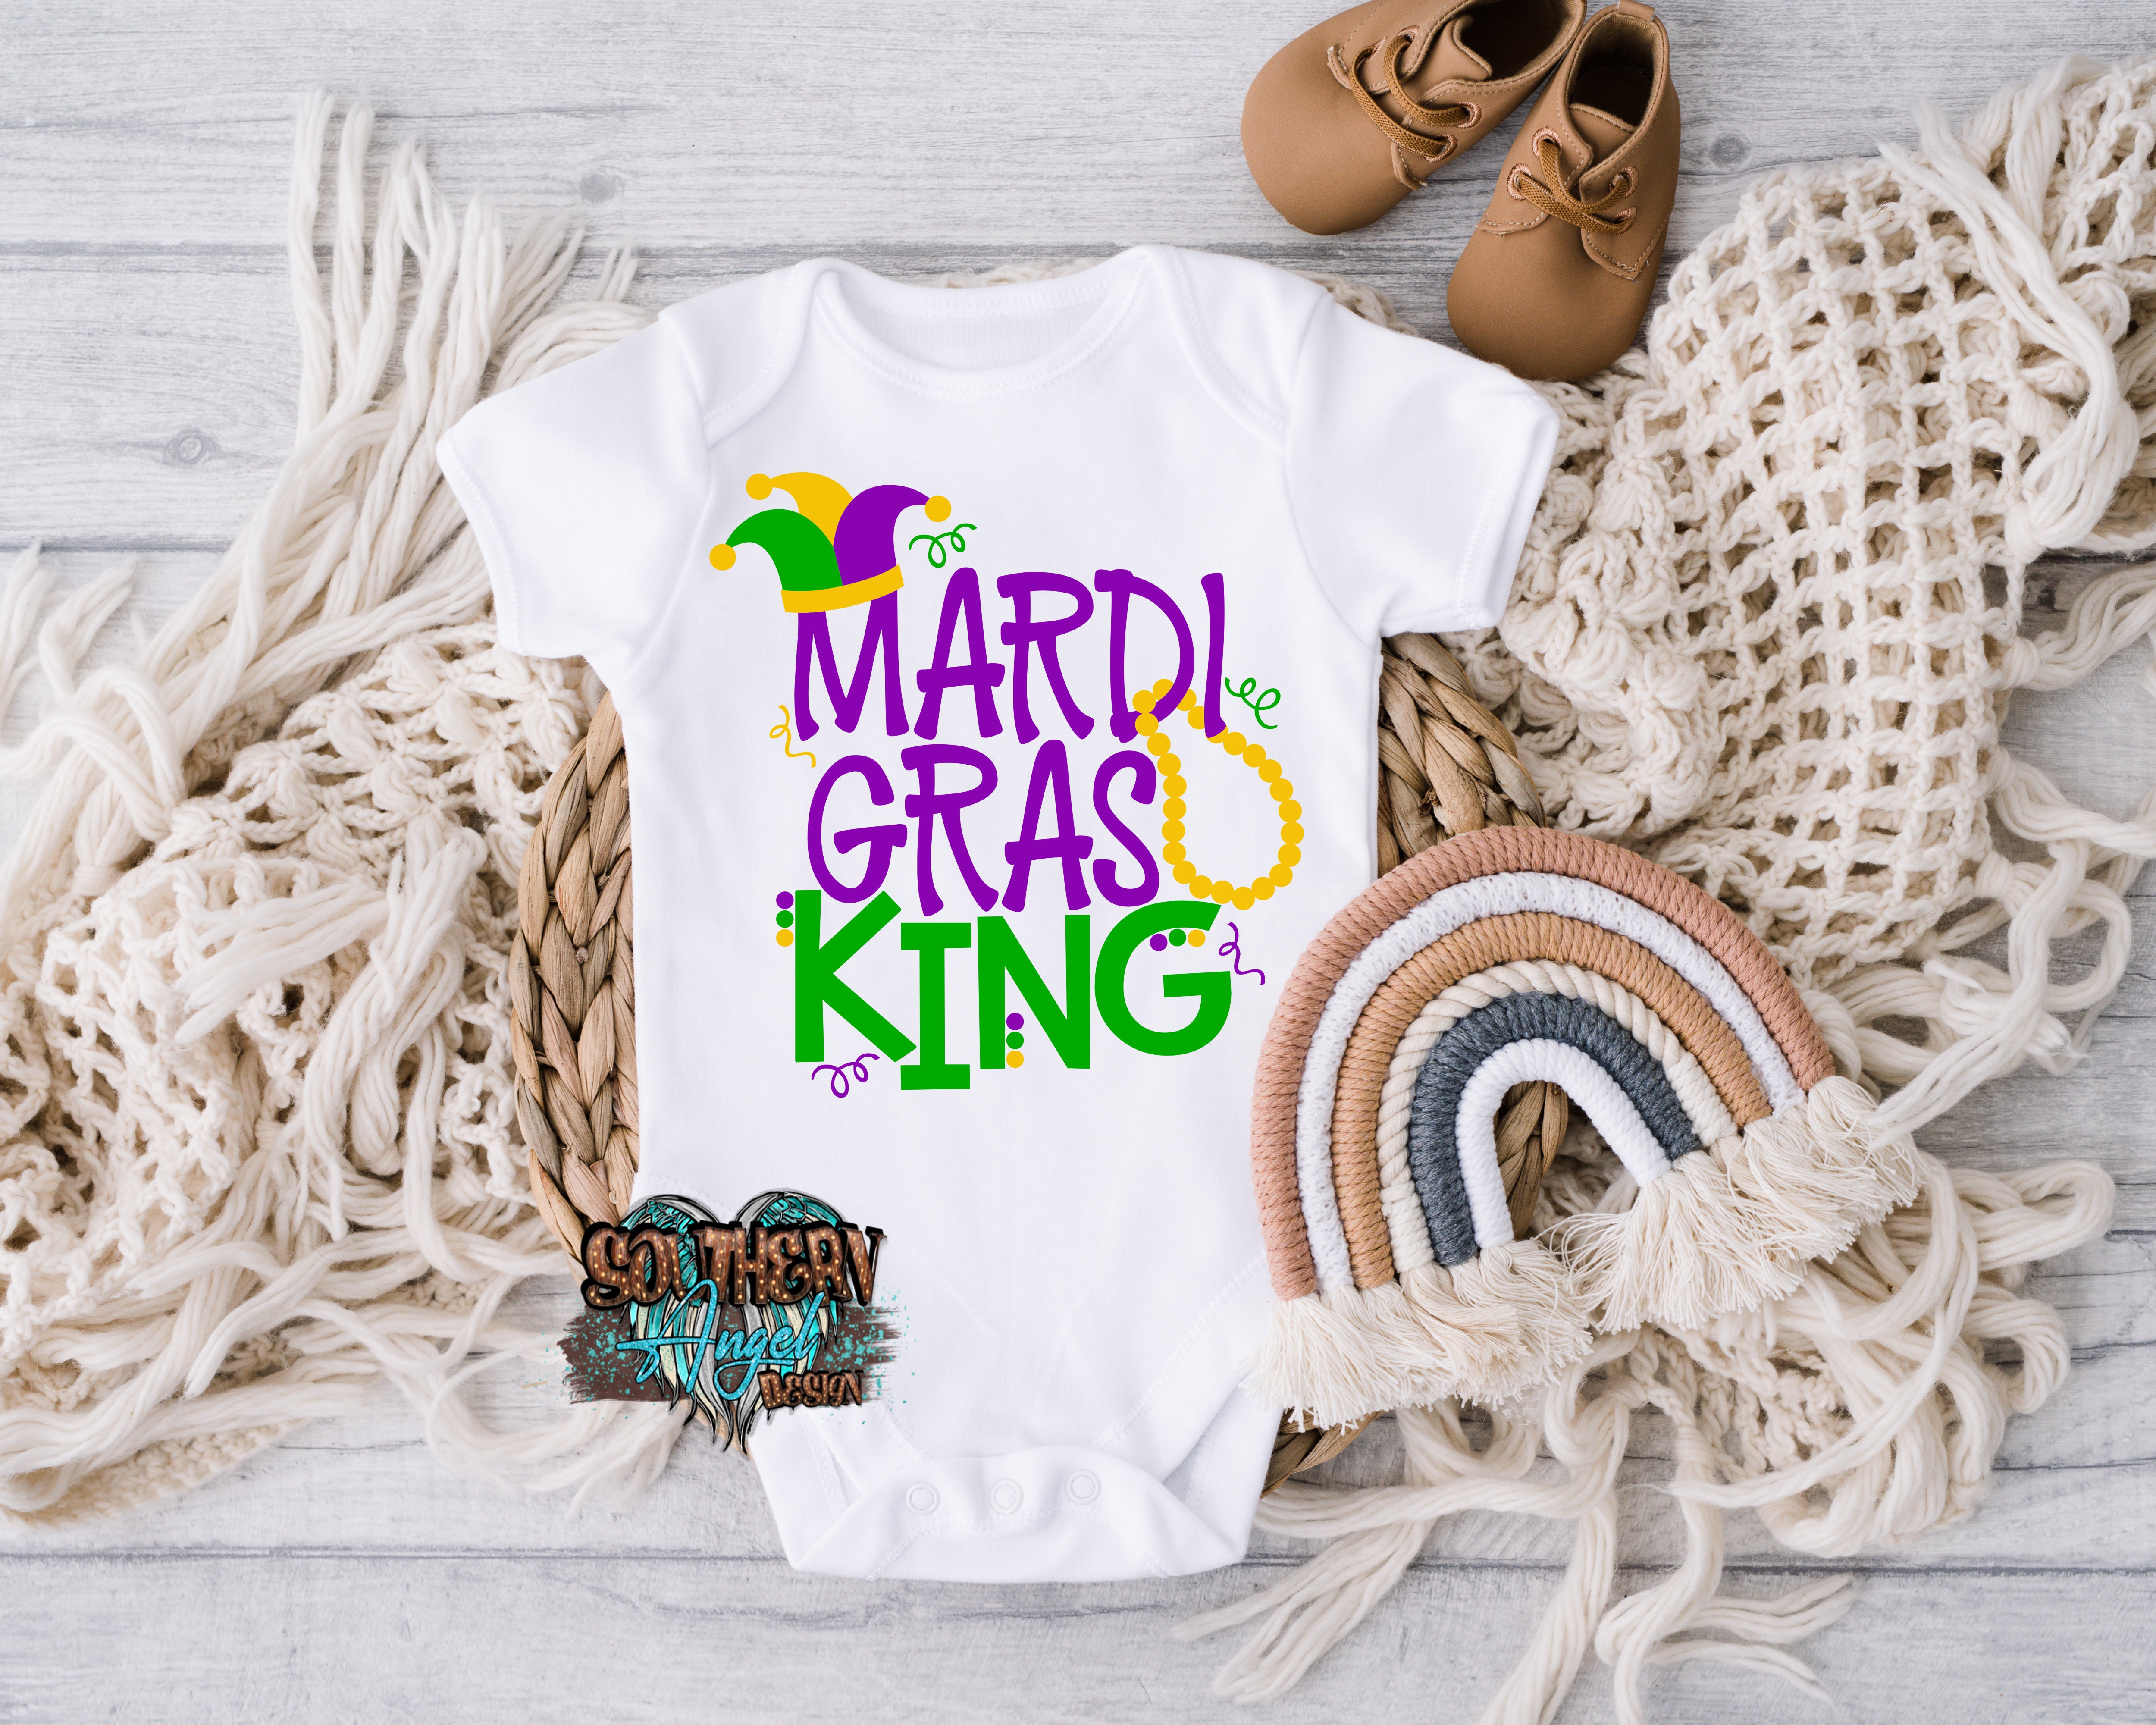 Light Gray Mardi Gras King image_31d47be1-299b-4e4c-bedf-1a9527c0b1fa.jpg mardi-gras-king Kids Mardi Gras